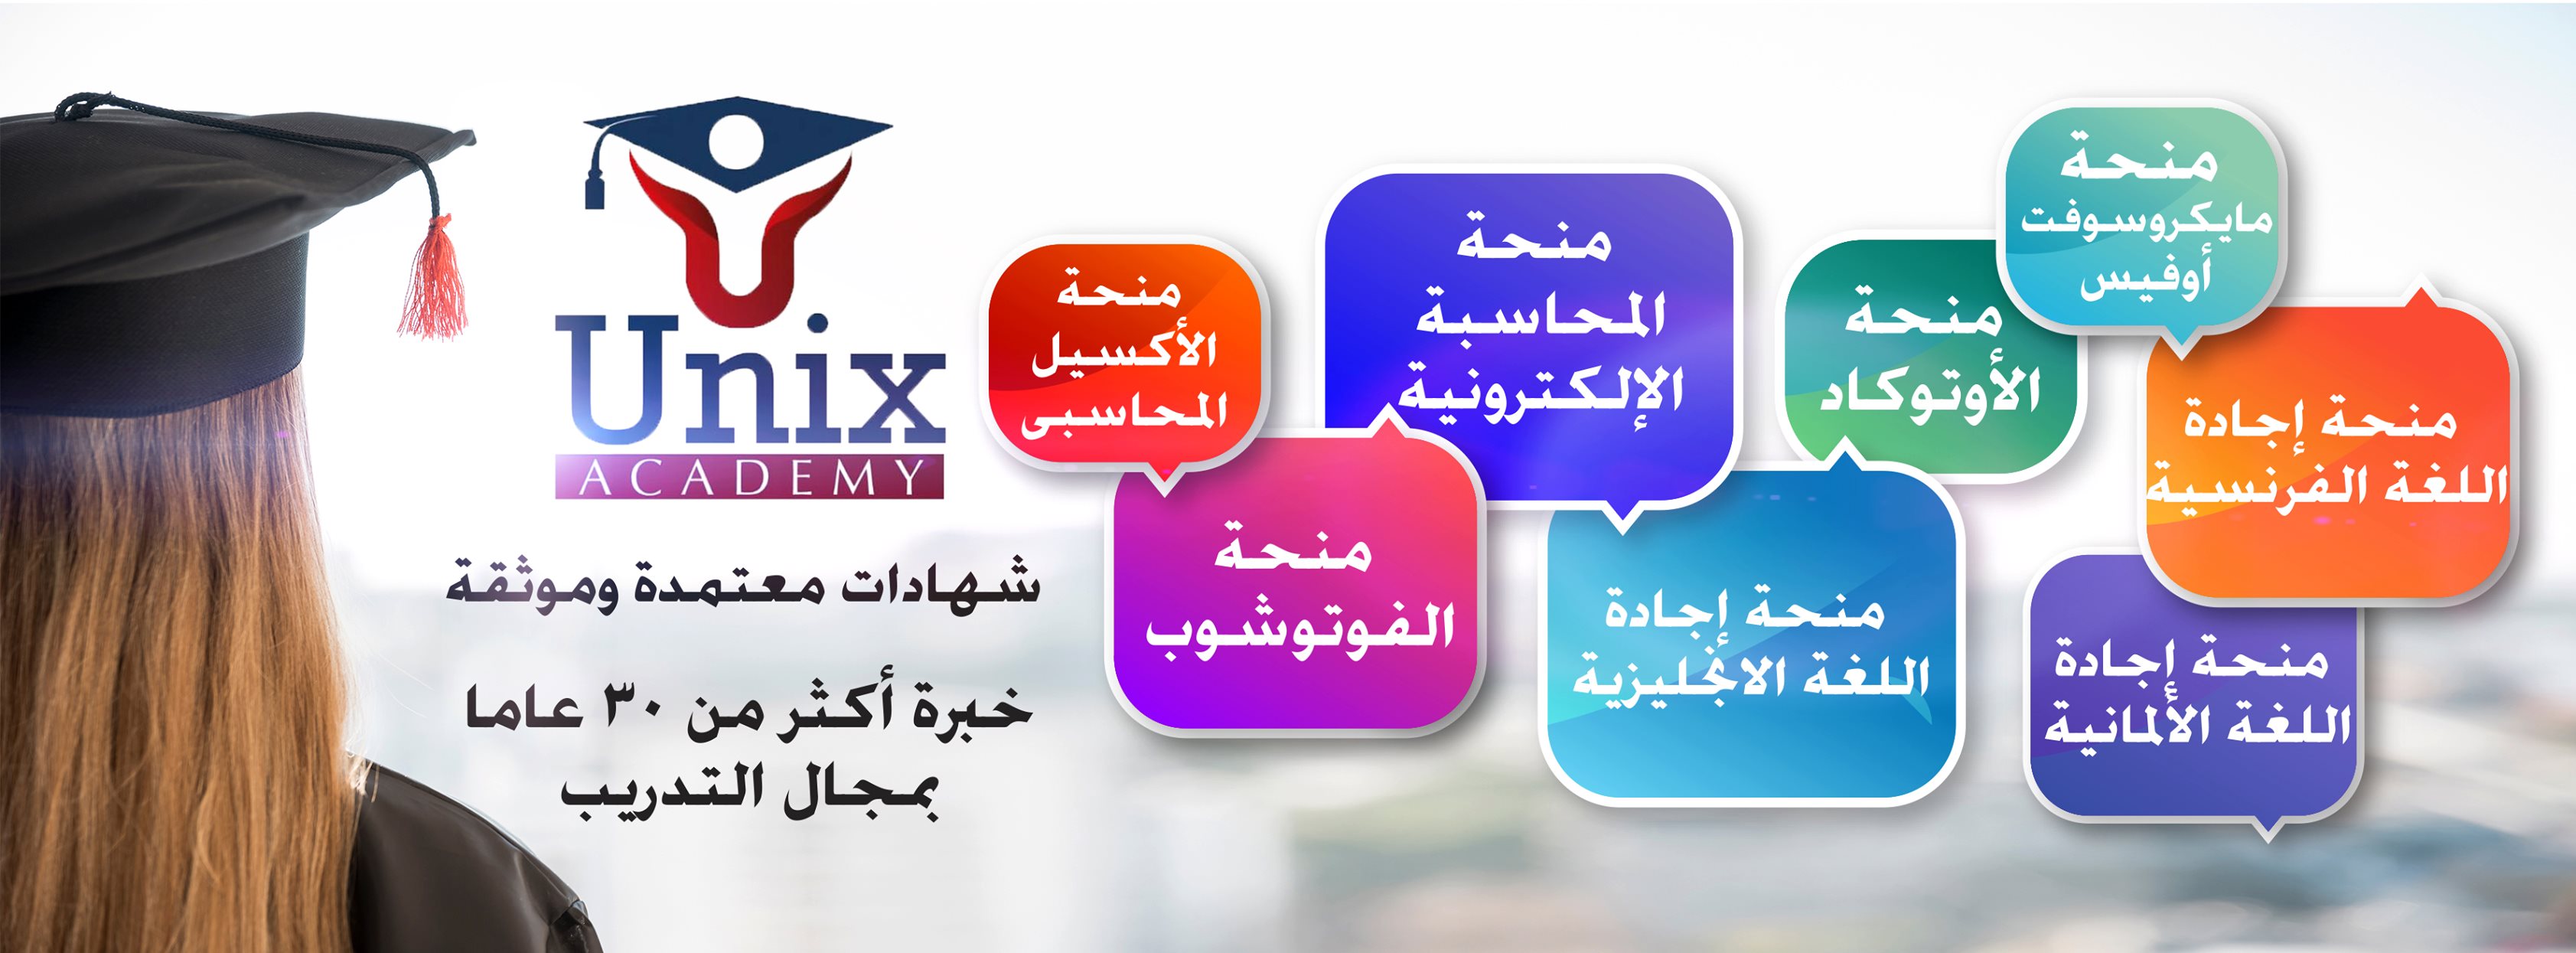 غلاف Unix academy egypt